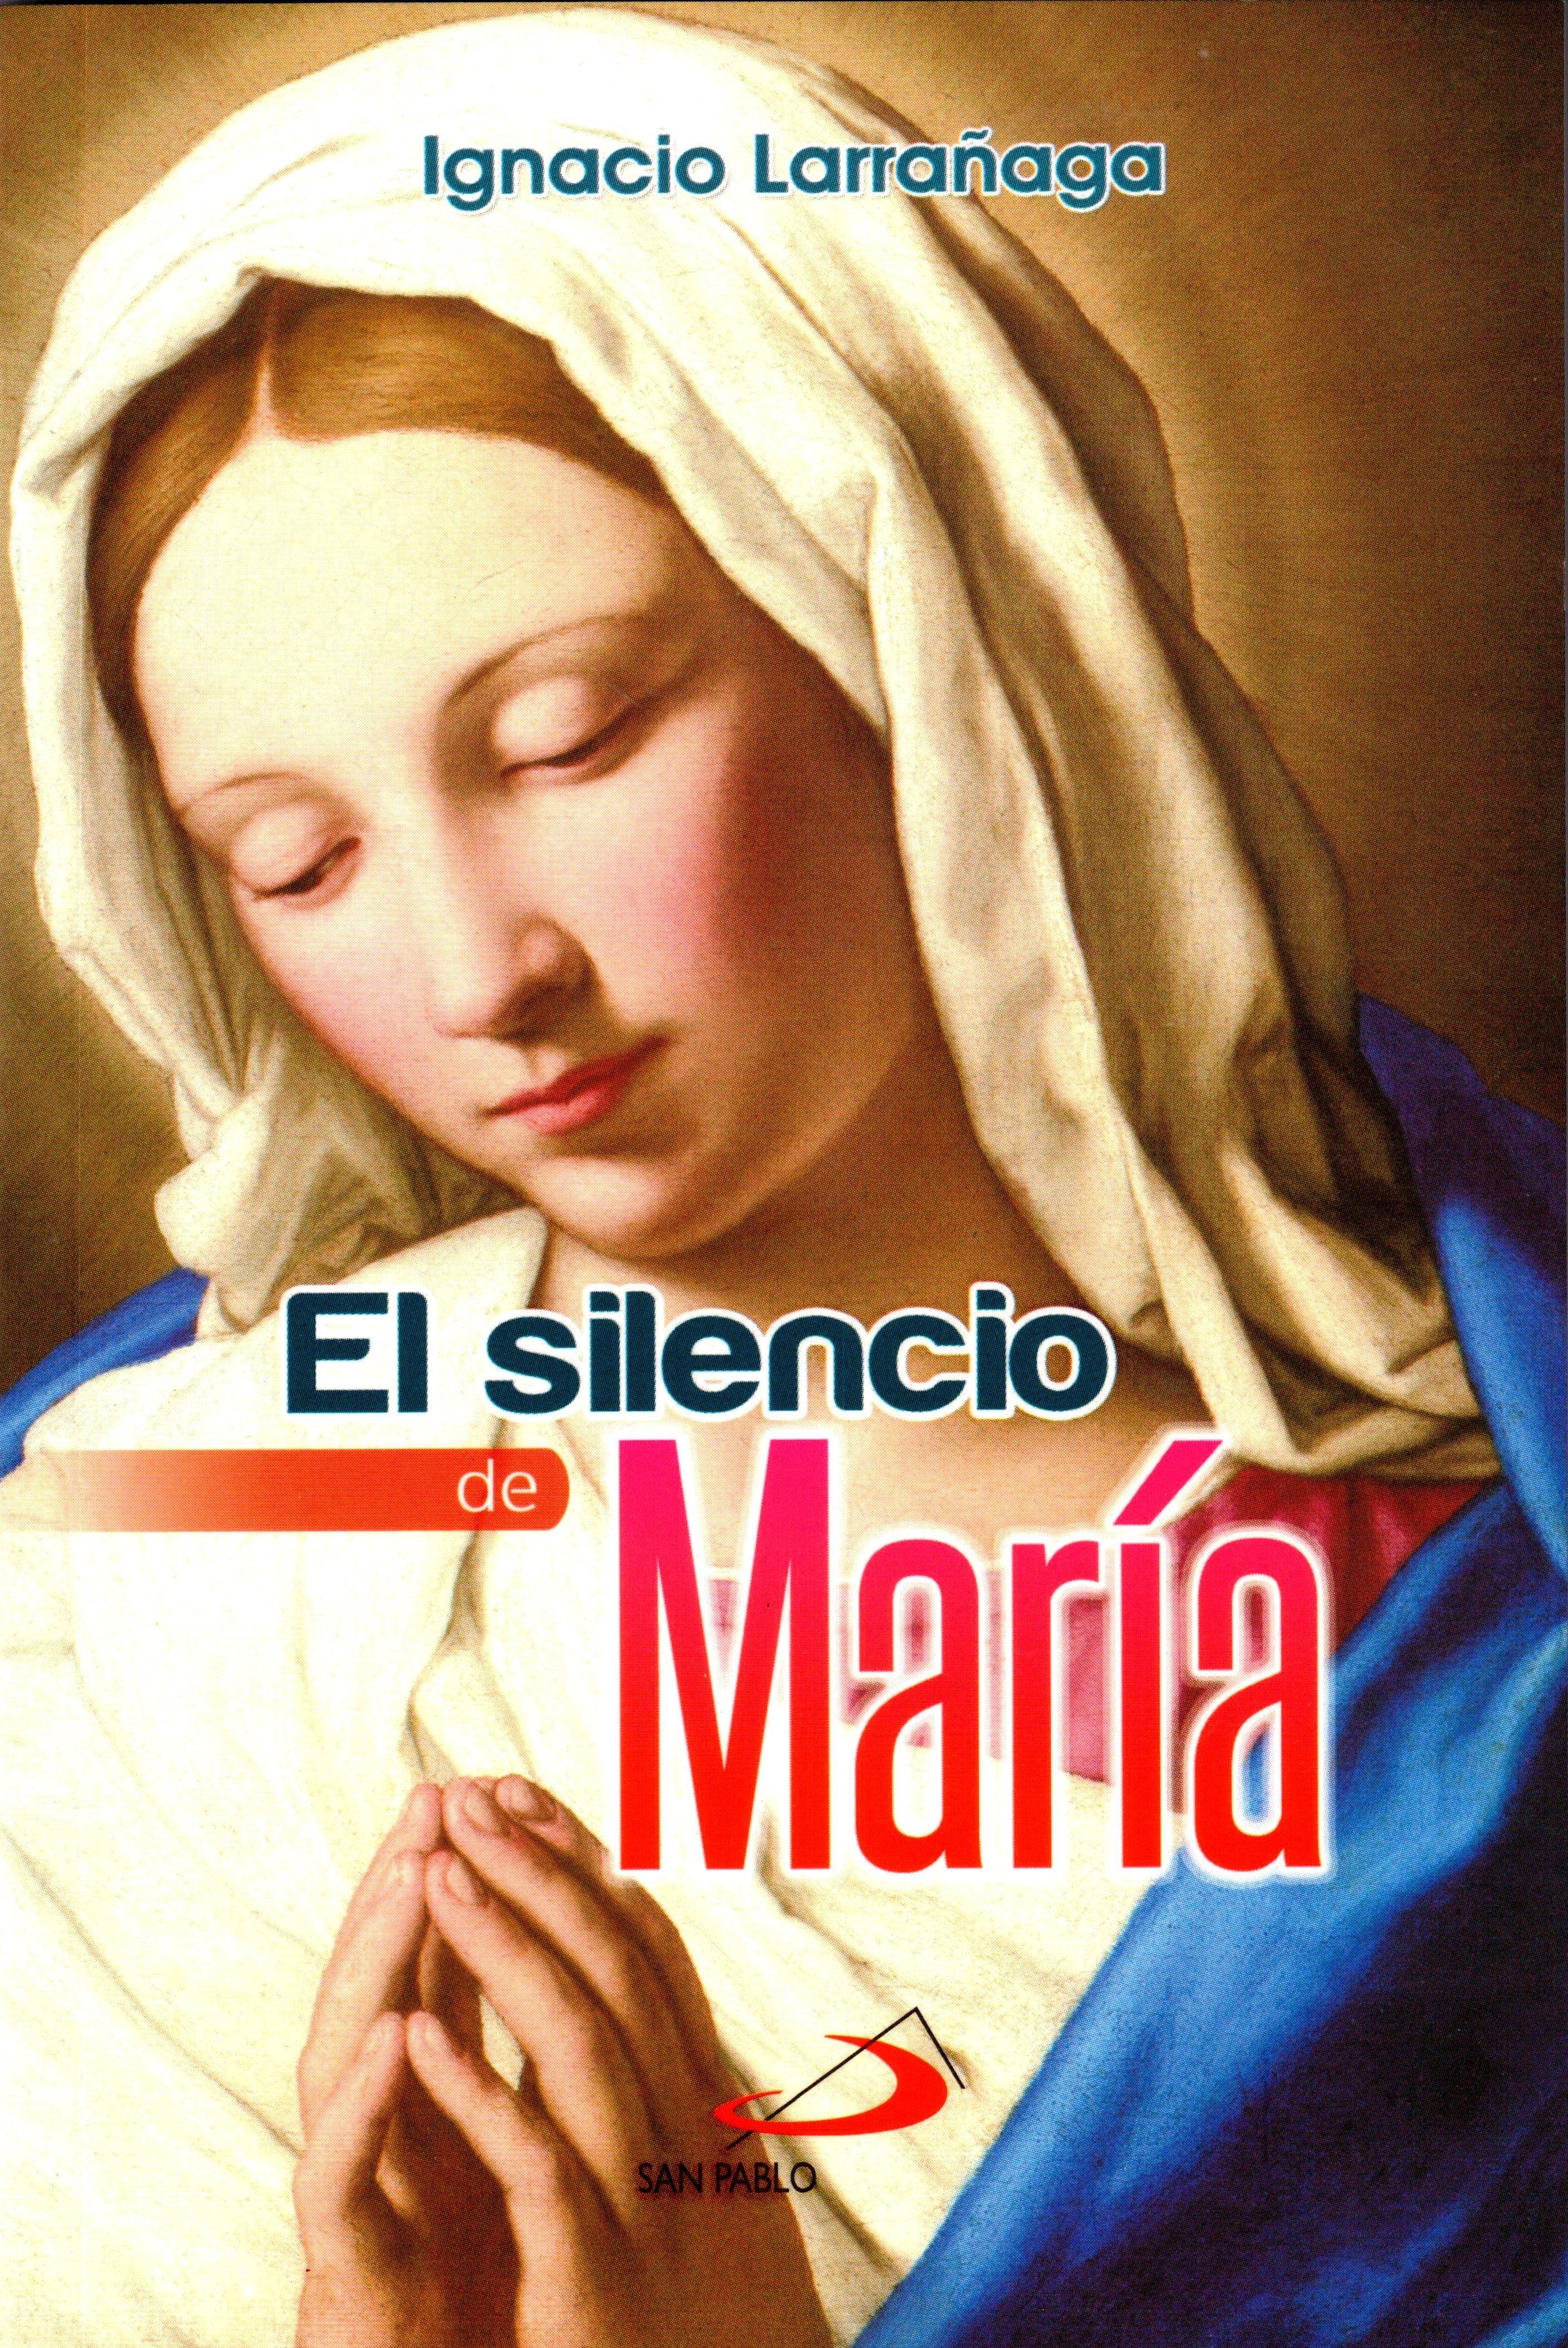 El silencio de Maria